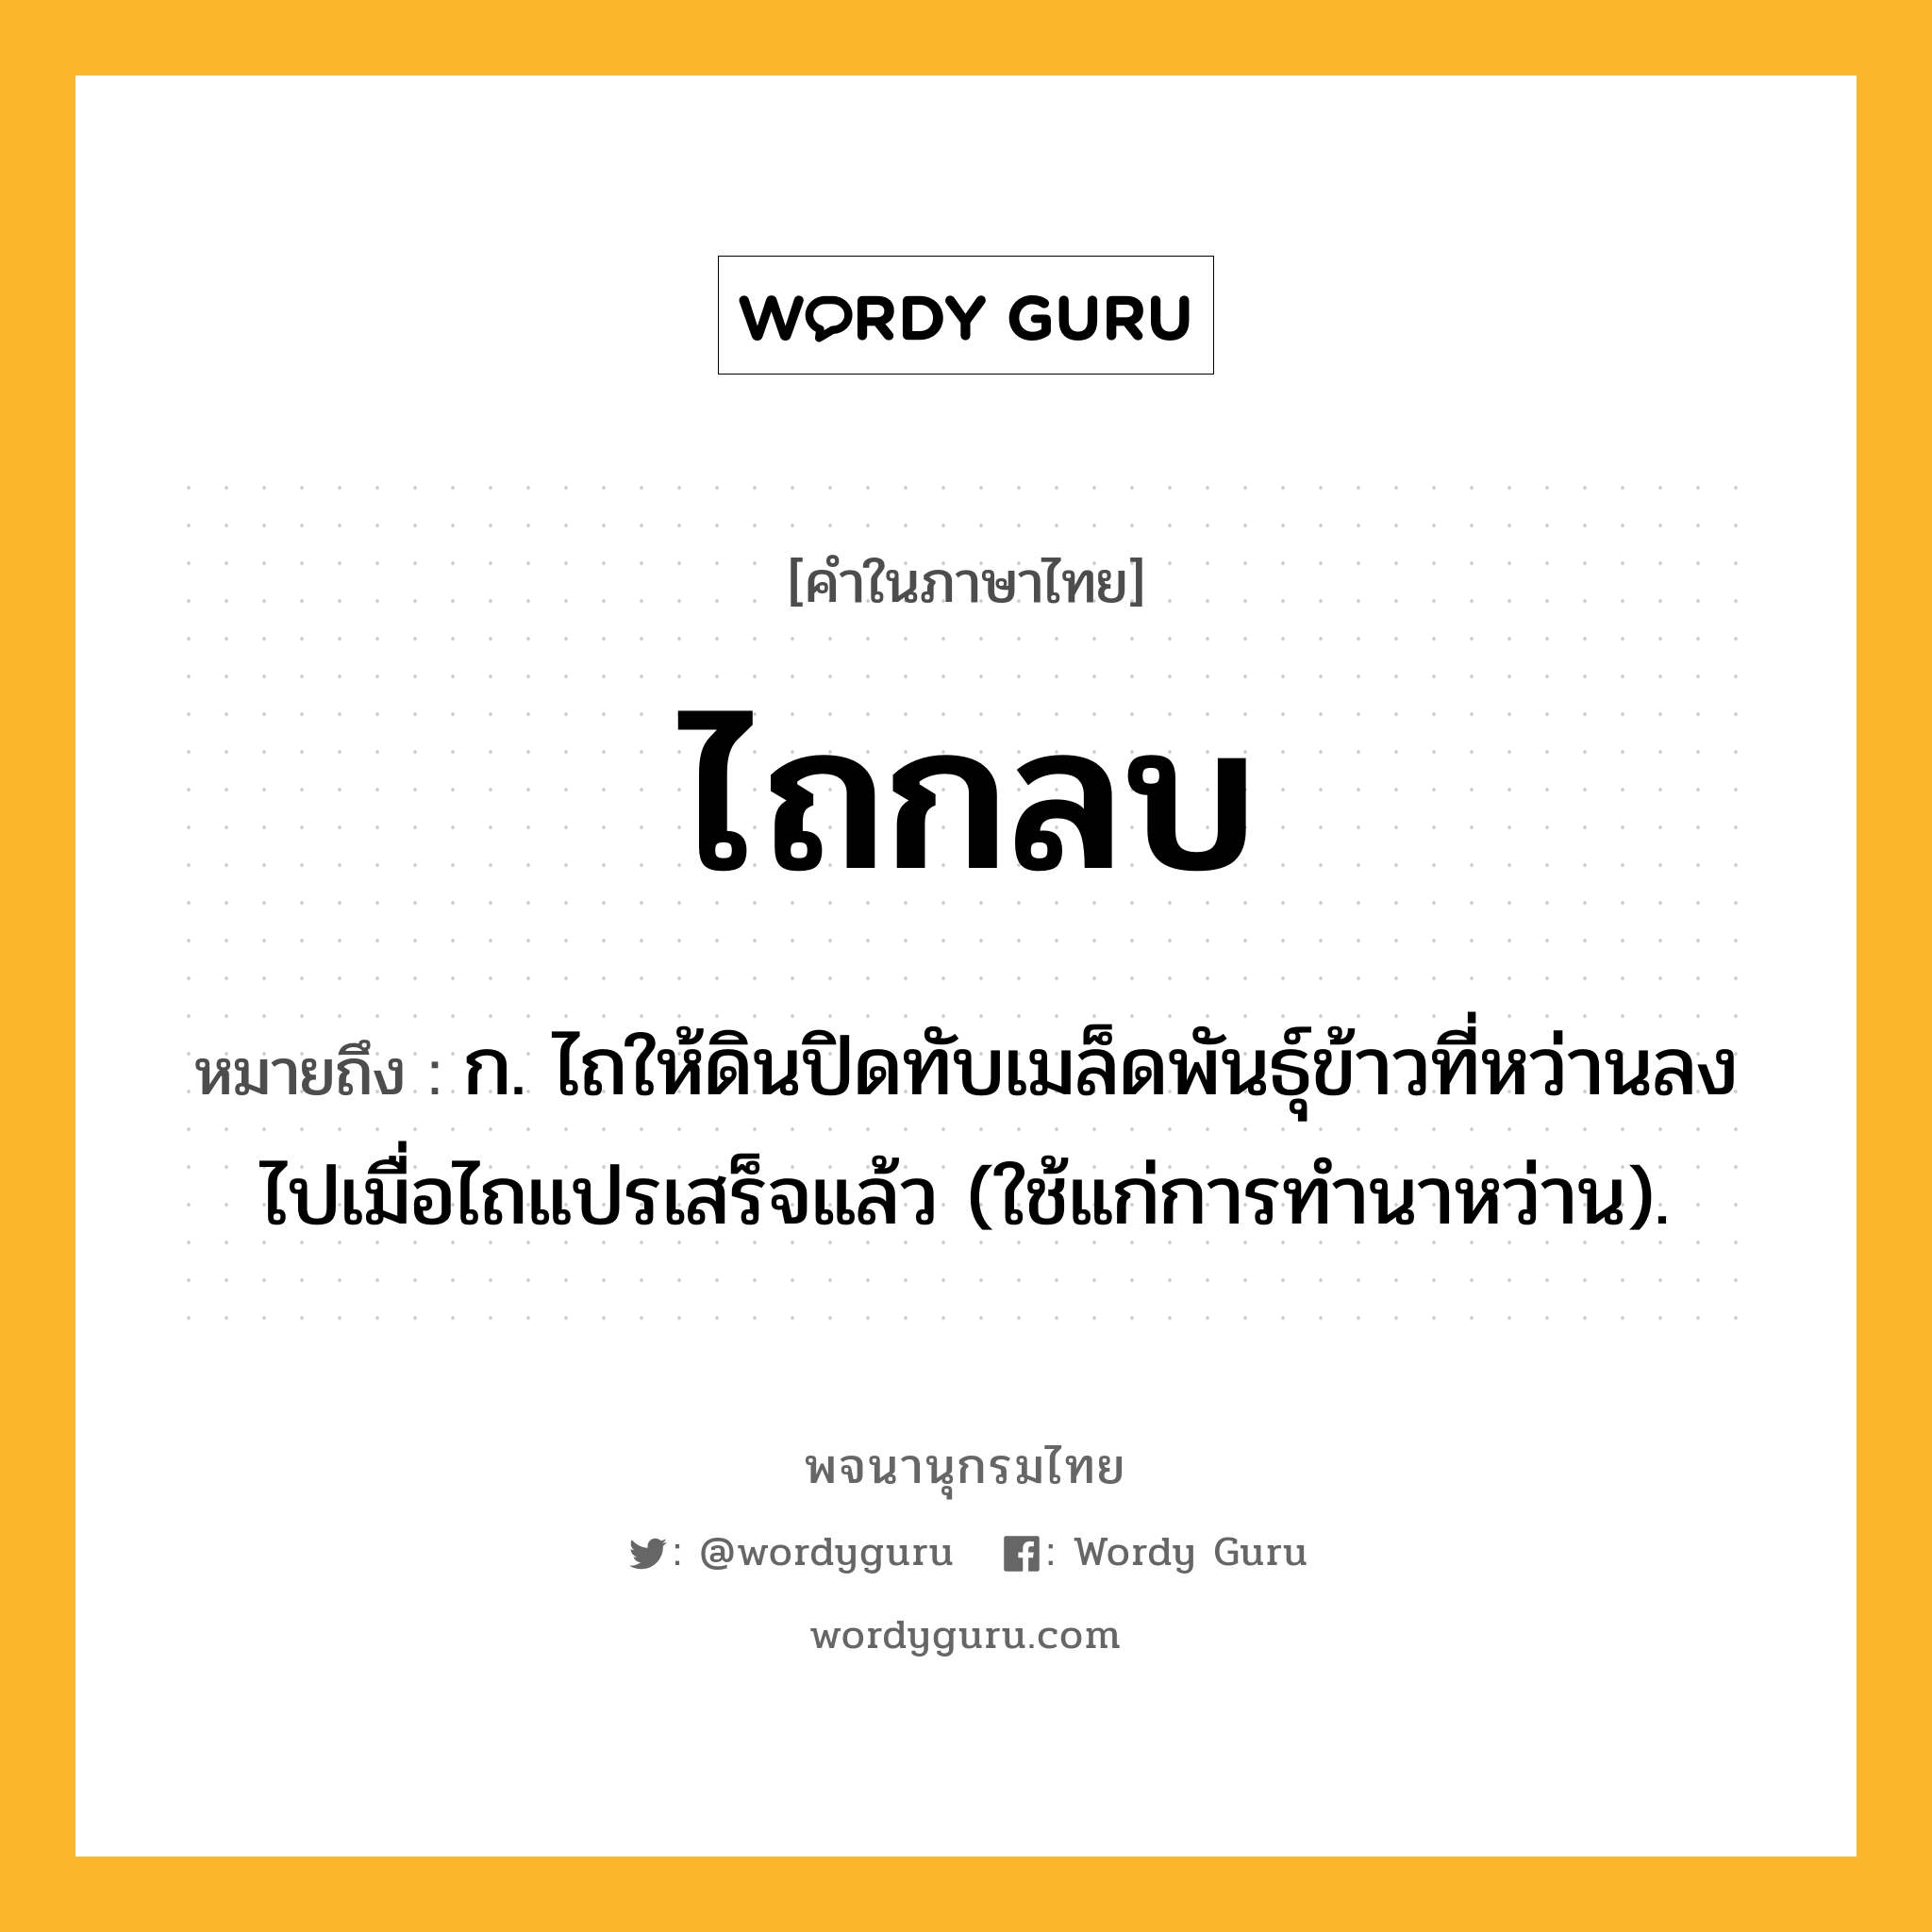 ไถกลบ ความหมาย หมายถึงอะไร?, คำในภาษาไทย ไถกลบ หมายถึง ก. ไถให้ดินปิดทับเมล็ดพันธุ์ข้าวที่หว่านลงไปเมื่อไถแปรเสร็จแล้ว (ใช้แก่การทํานาหว่าน).